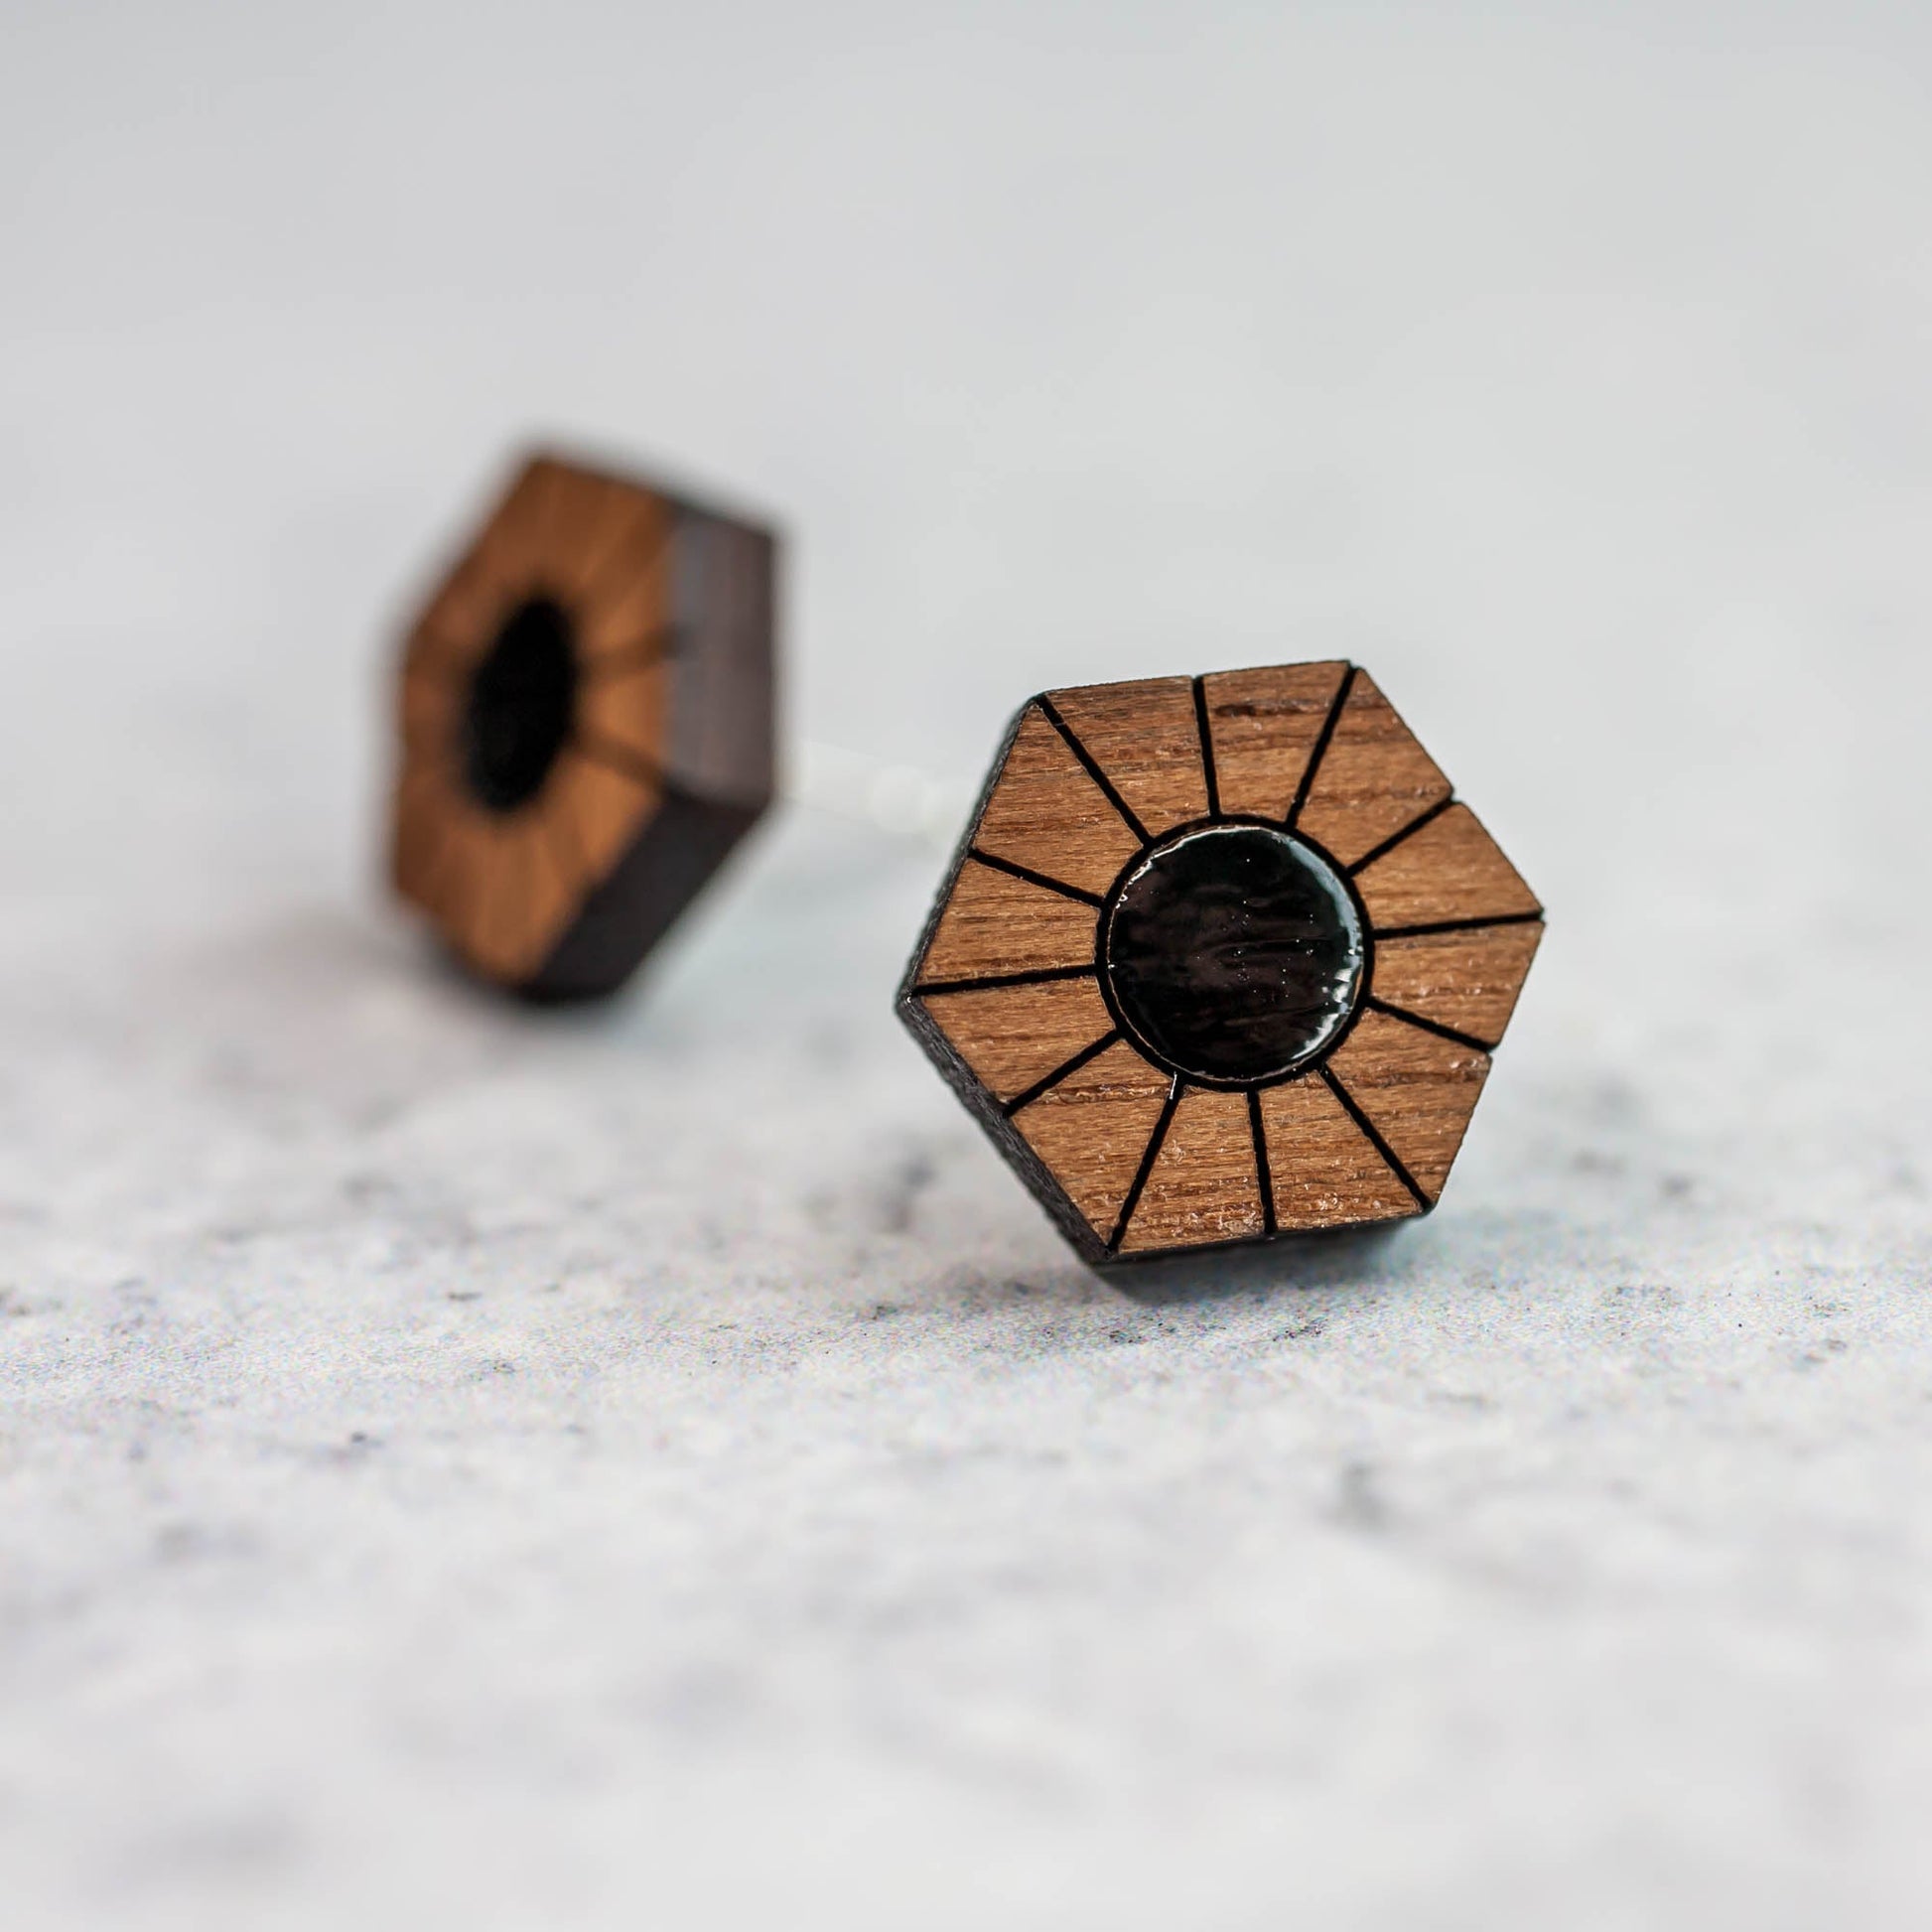 Wooden Laser Cut Earrings - Walnut with Black Sun Hexagon - by LeeMo Designs in Bend, Oregon